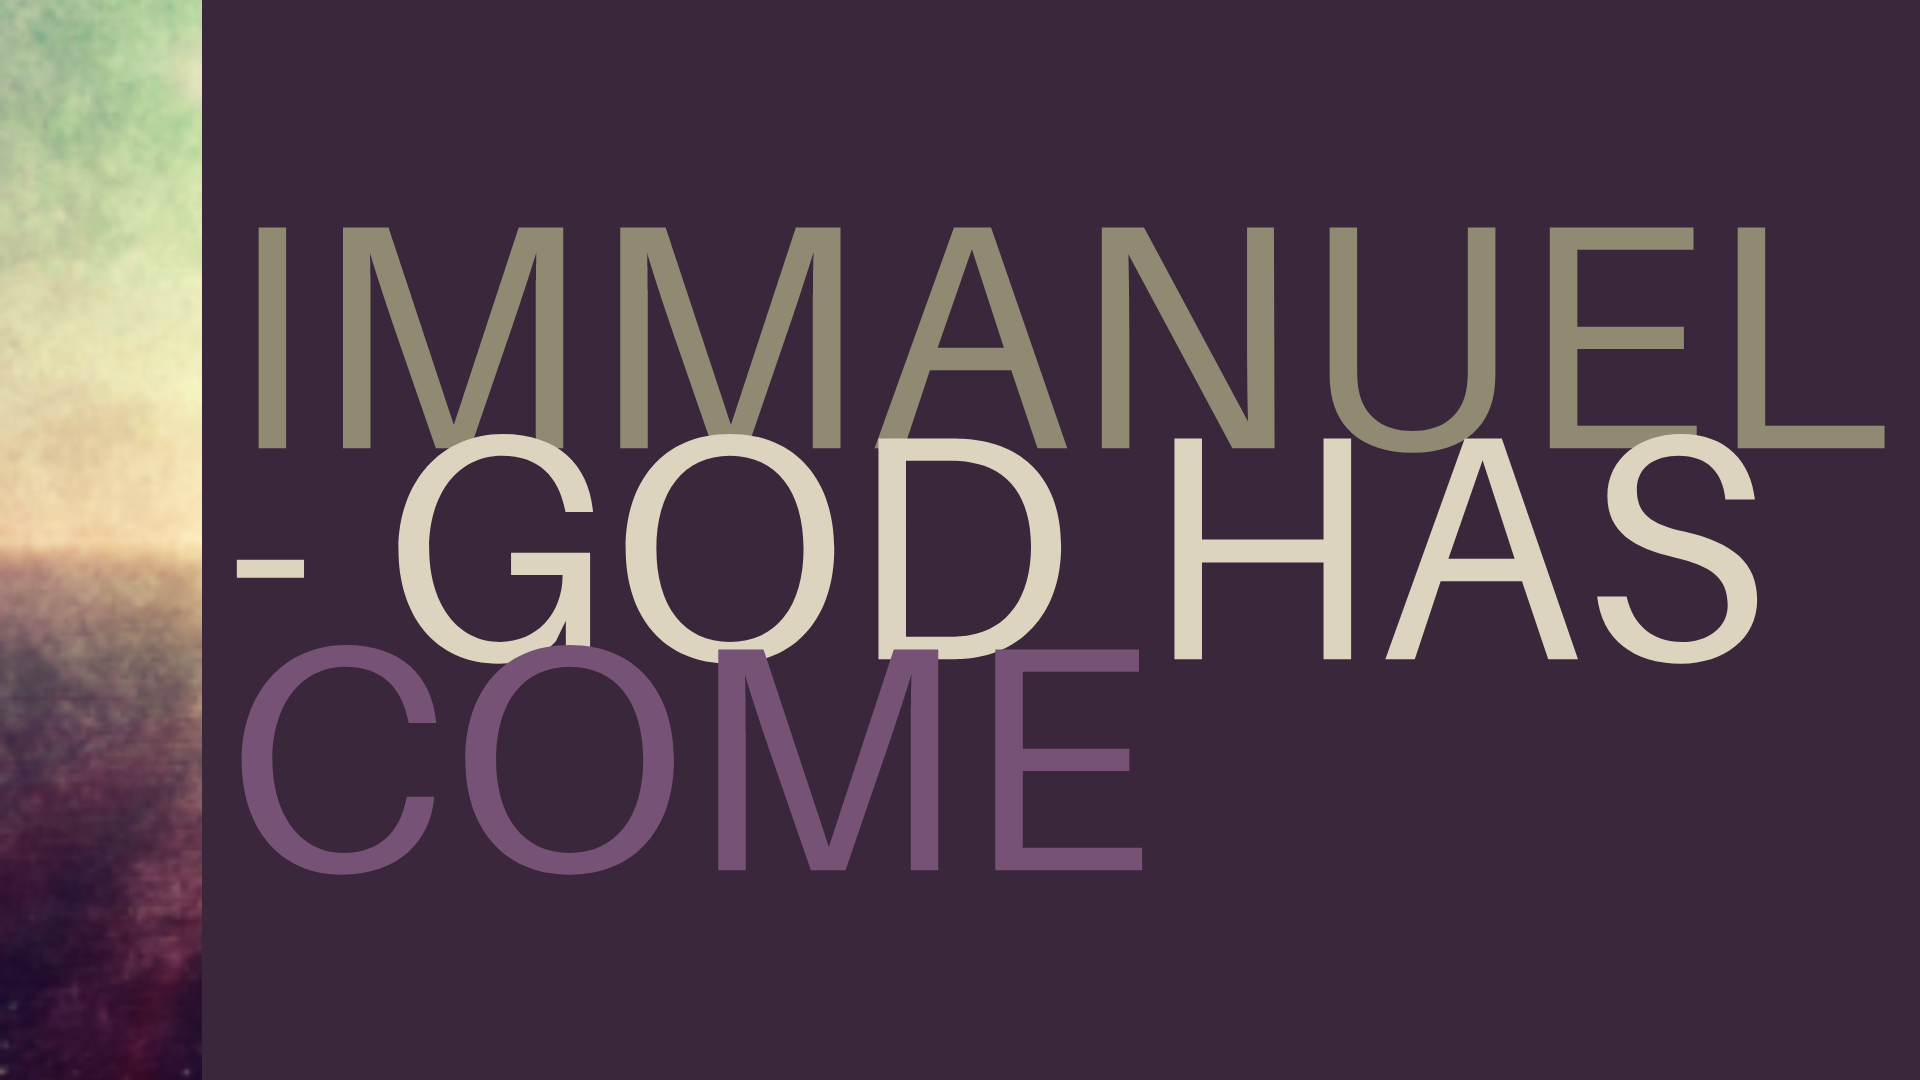 Immanuel - God Has Come